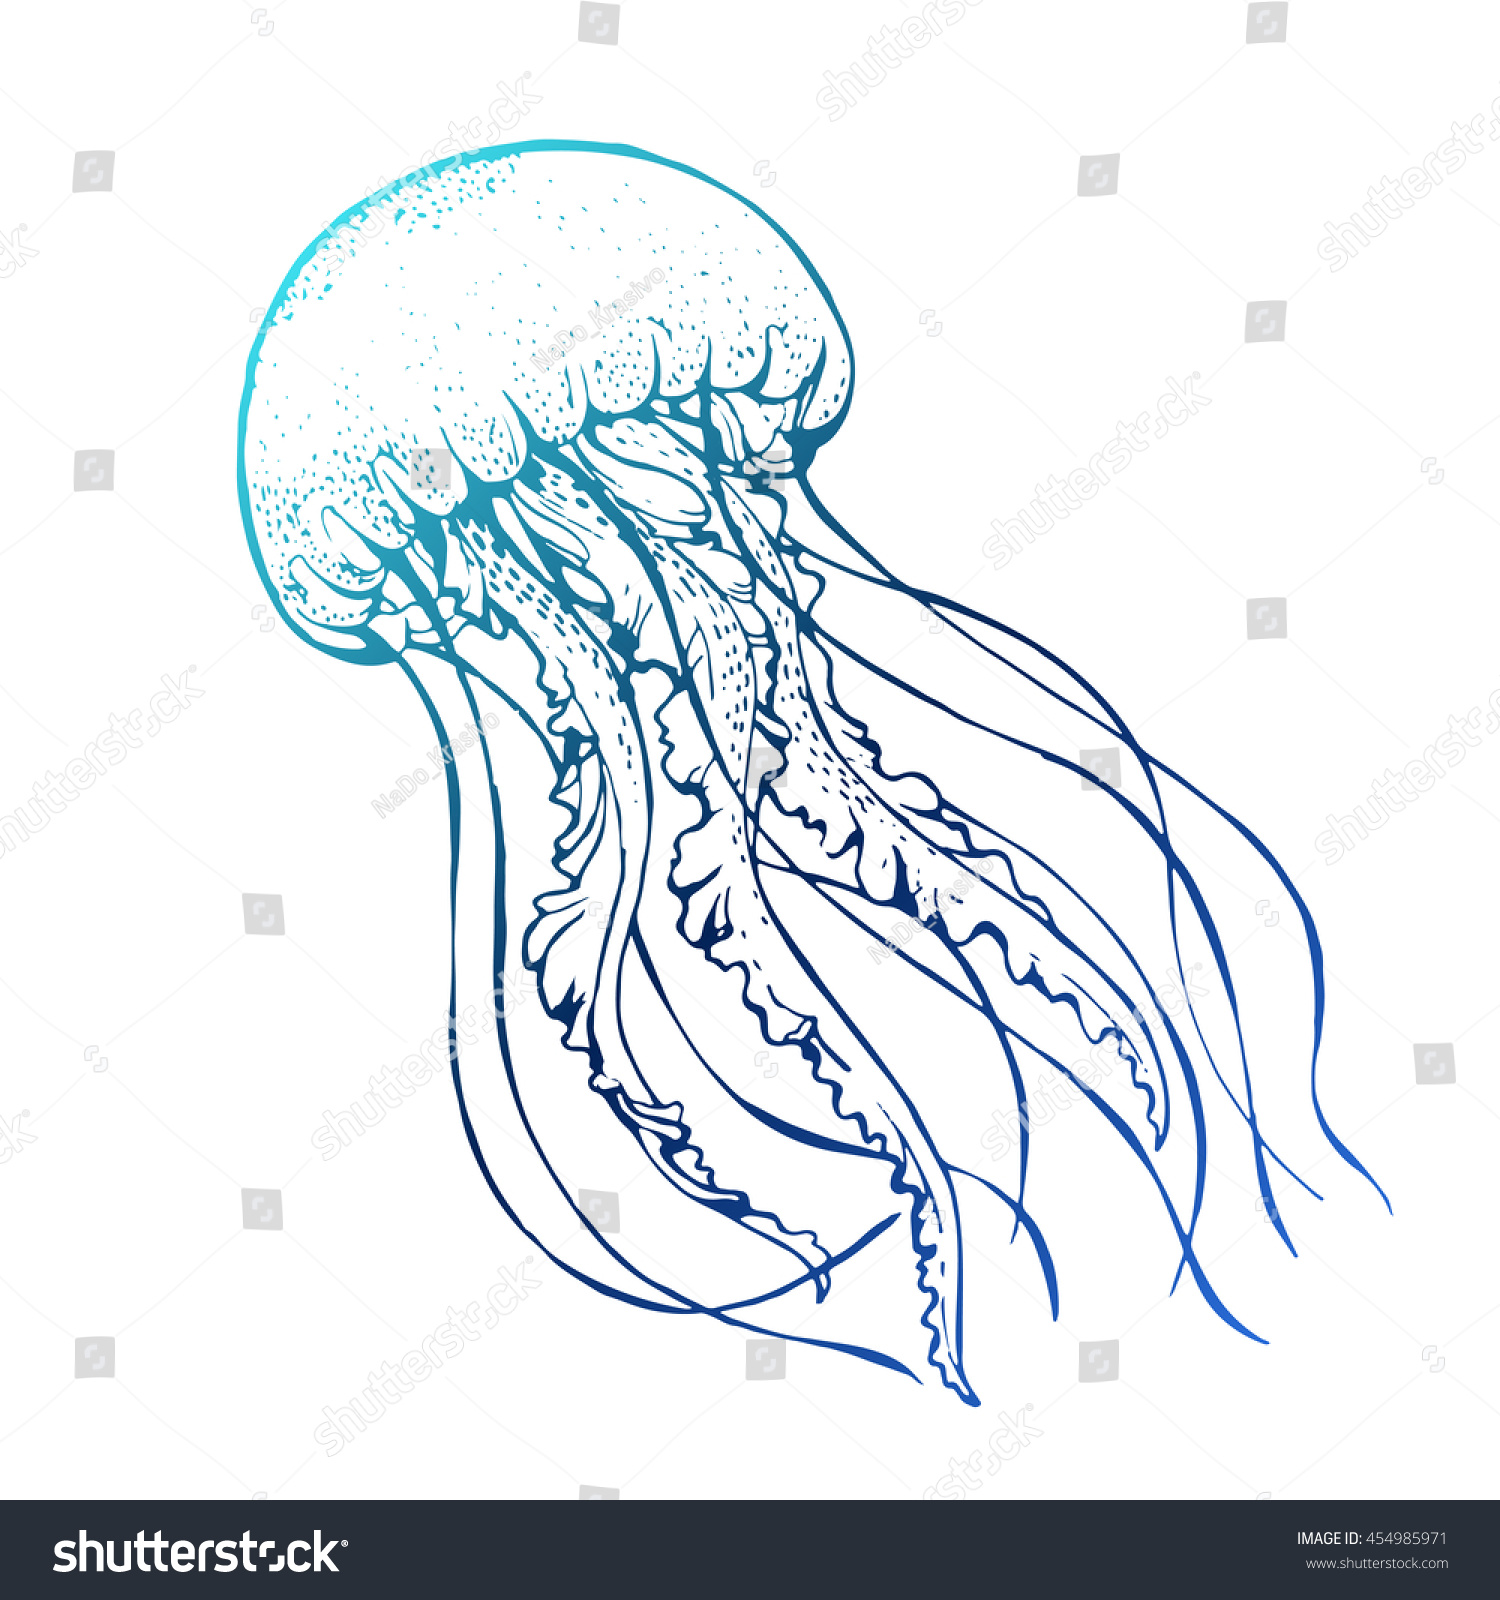 Медуза образцы изображений